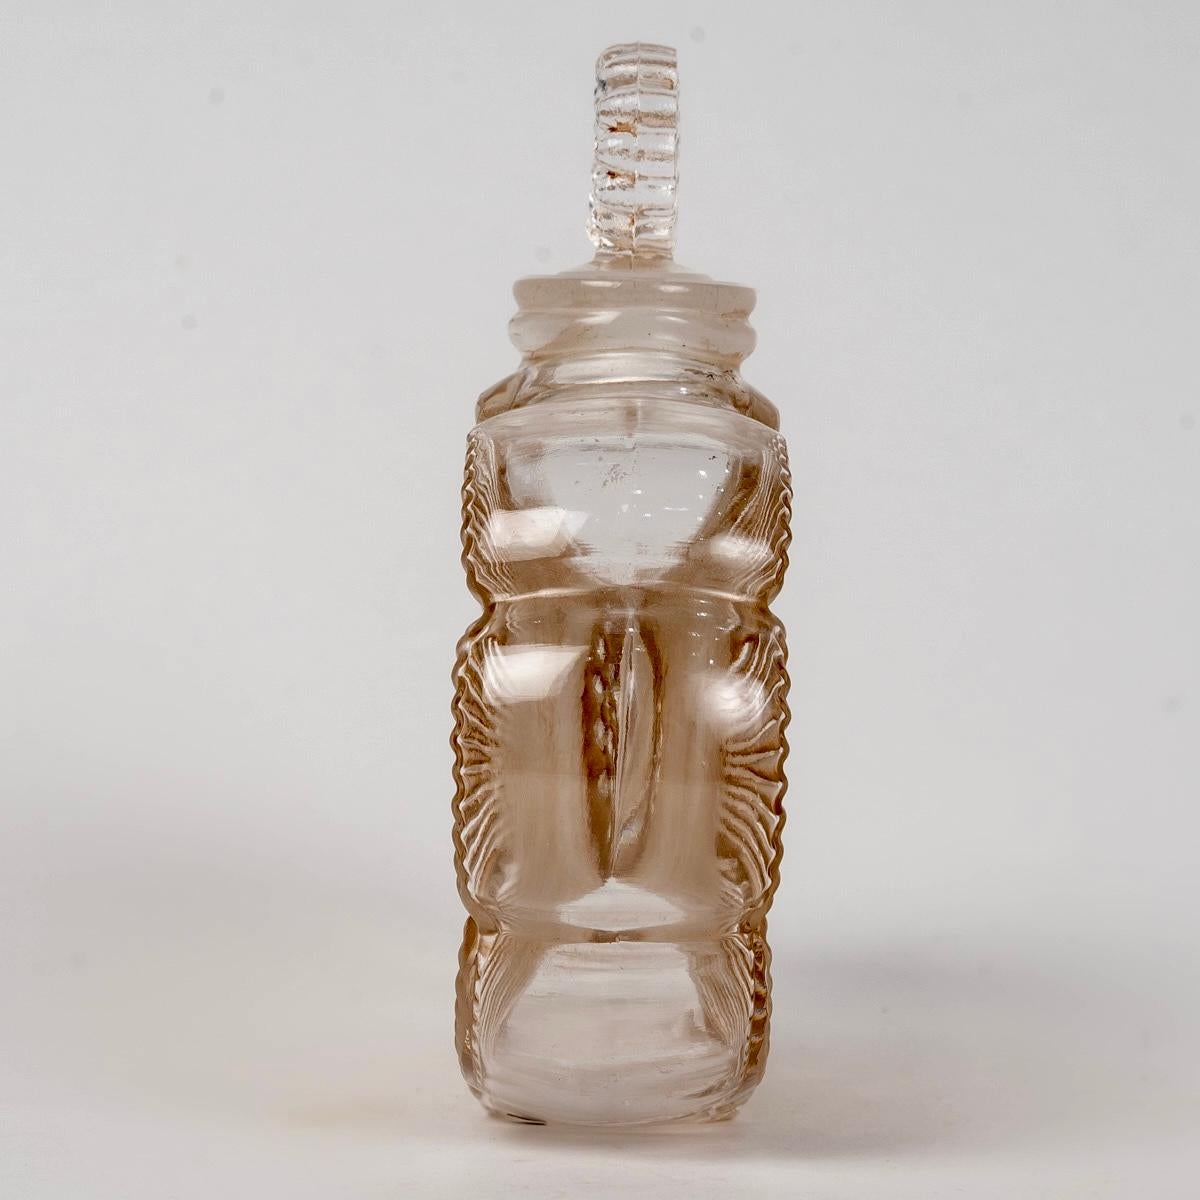 French 1935 René Lalique Perfume Bottle Deux Fleurs Glass with Sepia Patina